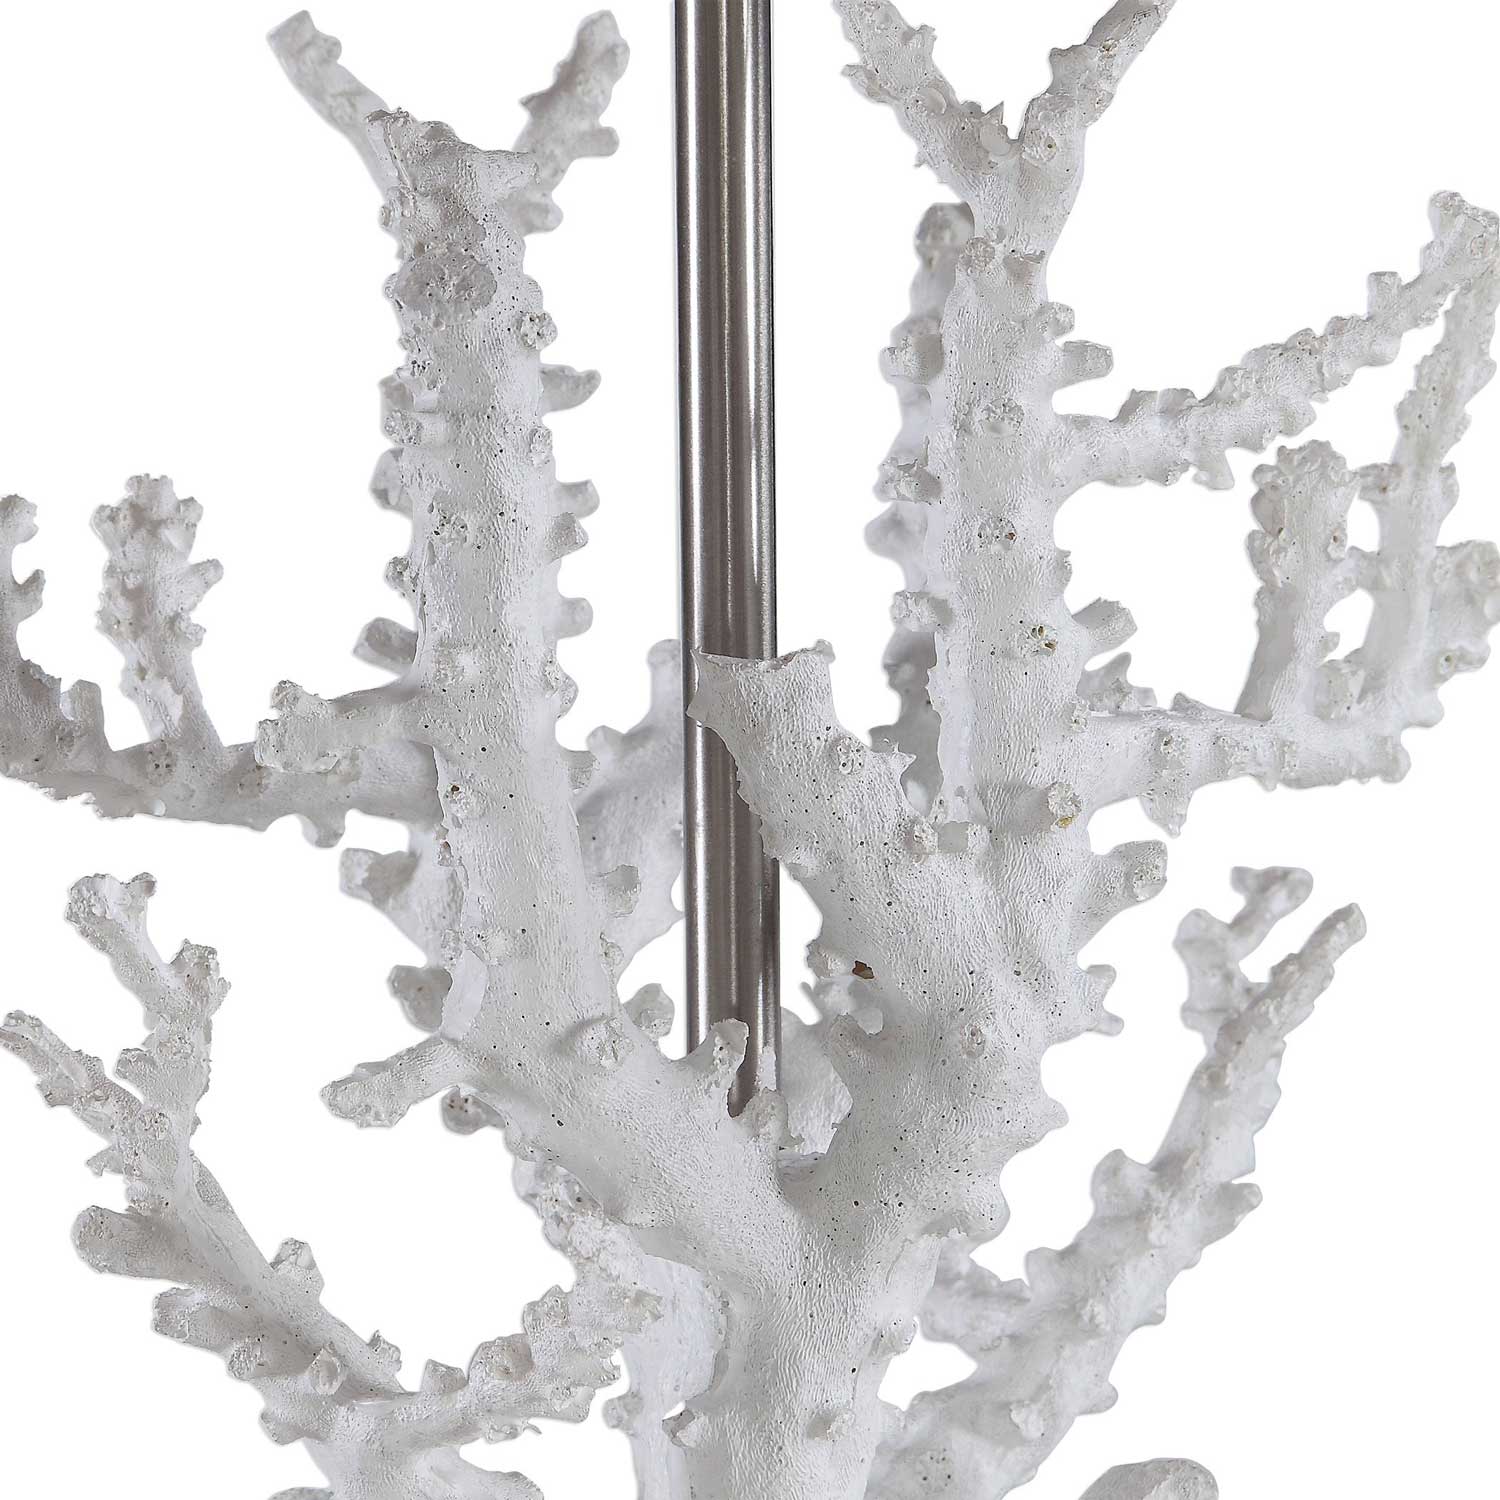 Uttermost Corallo Coral Table Lamp - White